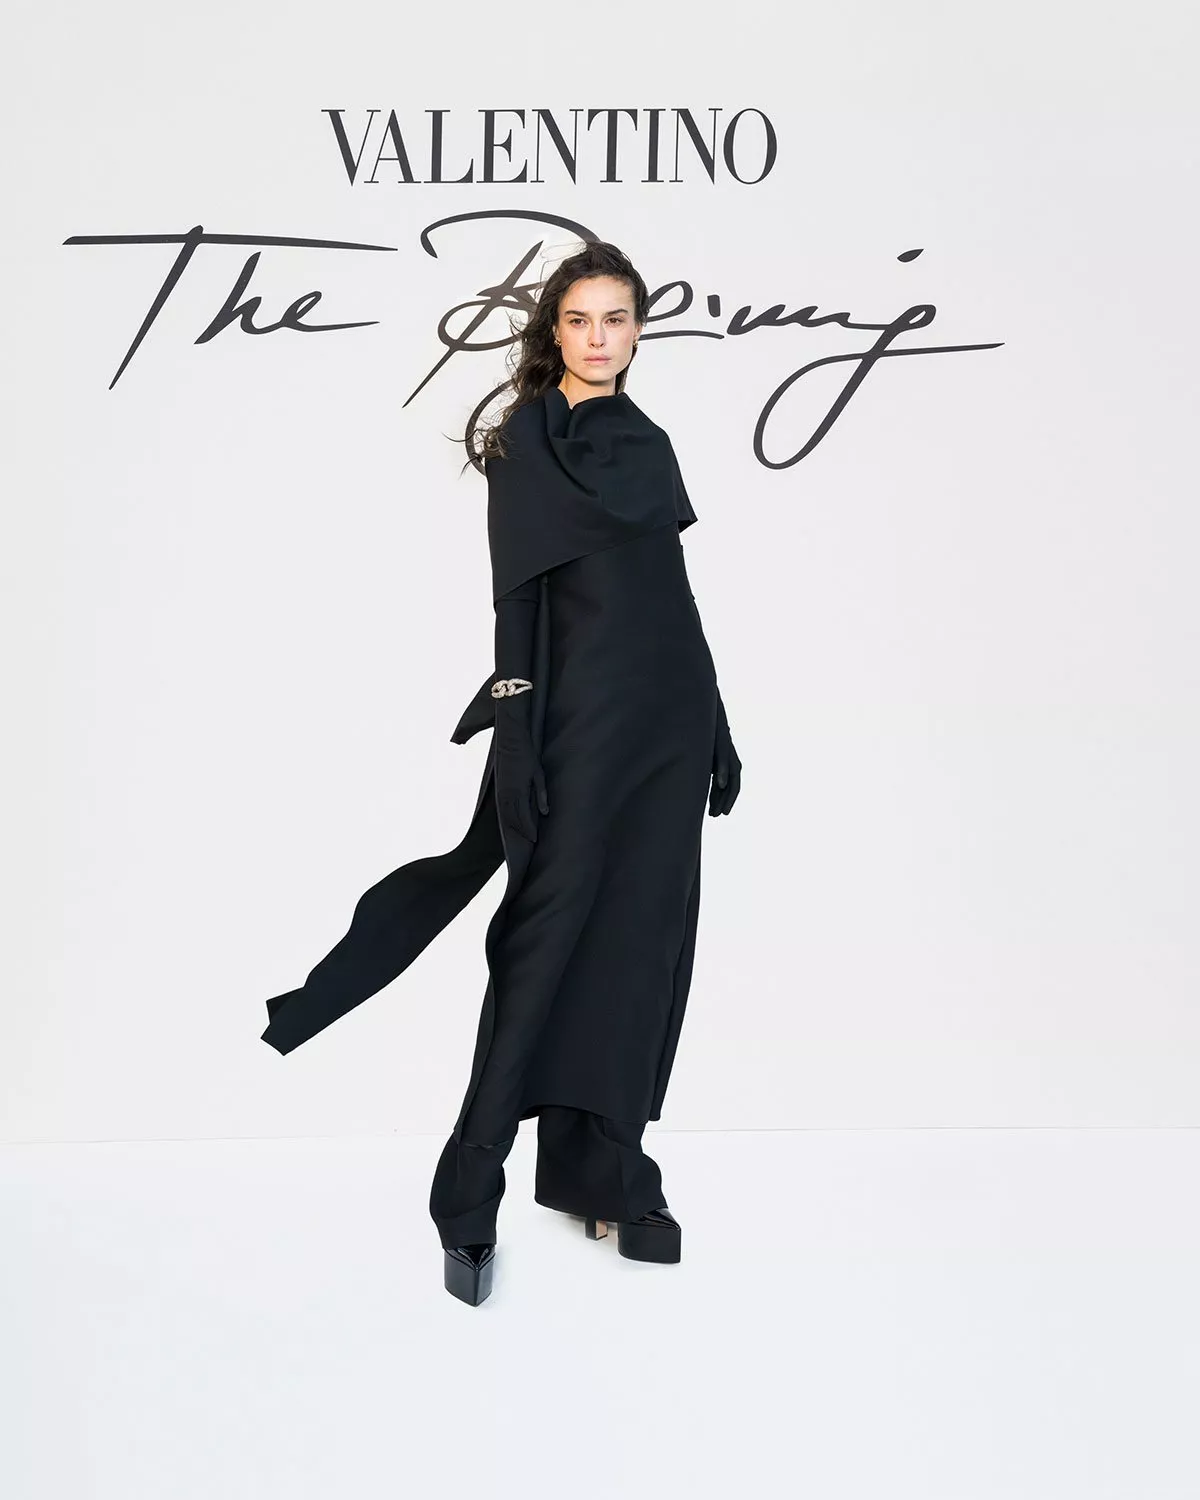 مجموعة Valentino للخياطة الراقية لخريف وشتاء 2022-2023: تشكيلة تعود إلى الجذور